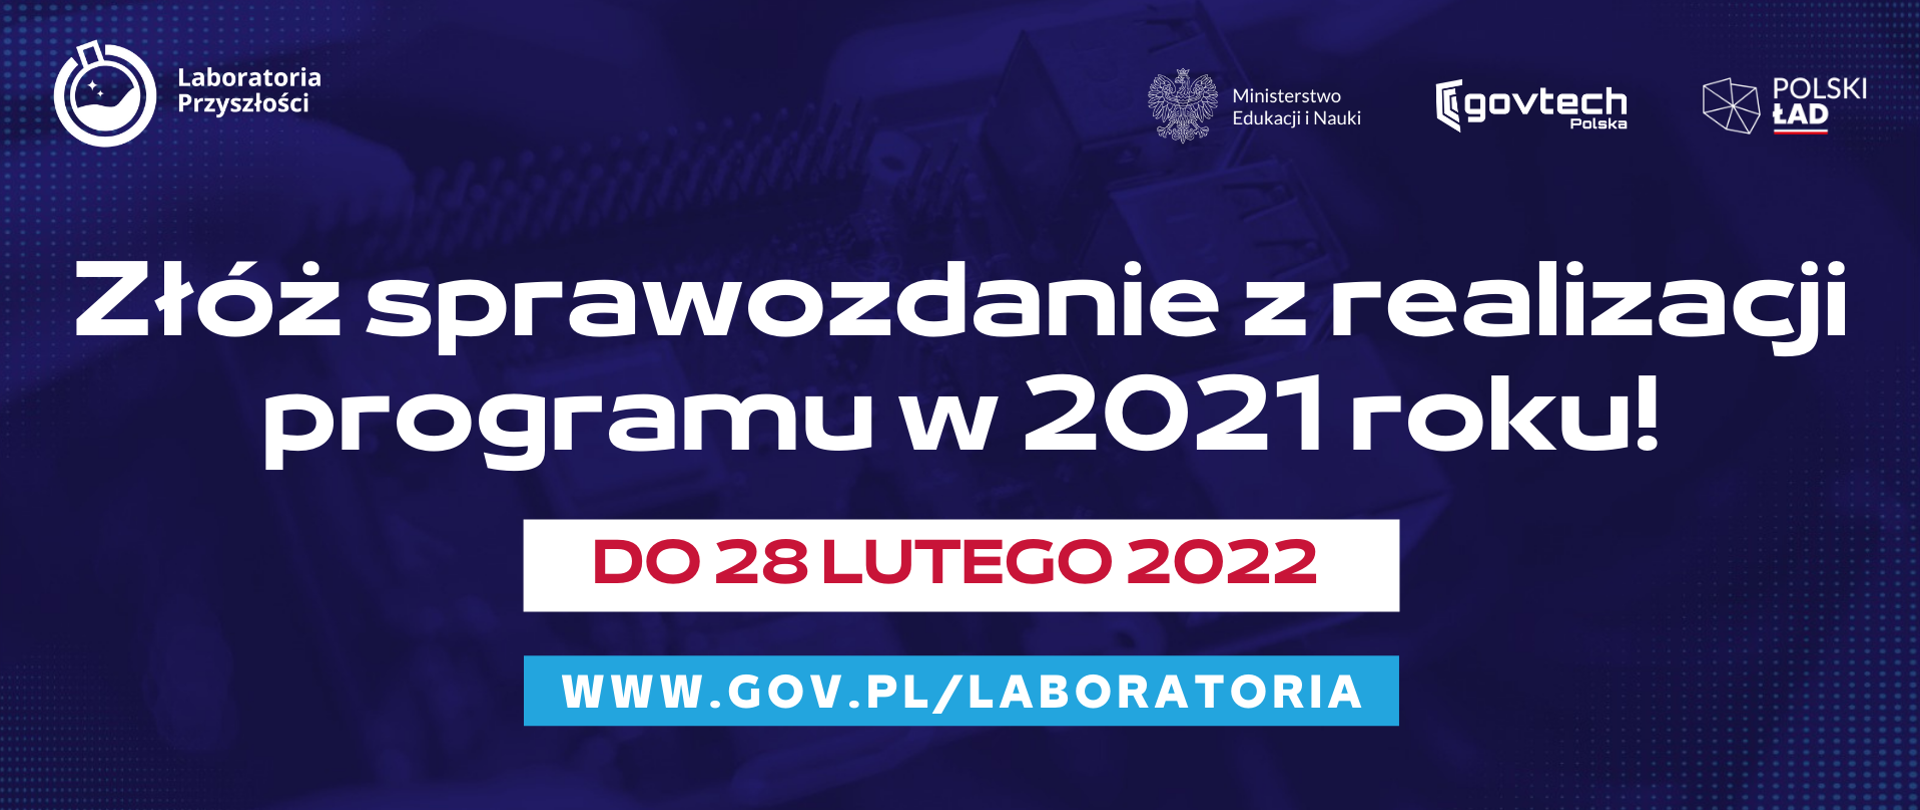 Złóż sprawozdanie z realizacji programu w 2021 roku!
do 28 lutego 2022
www.gov.pl/laboratoria